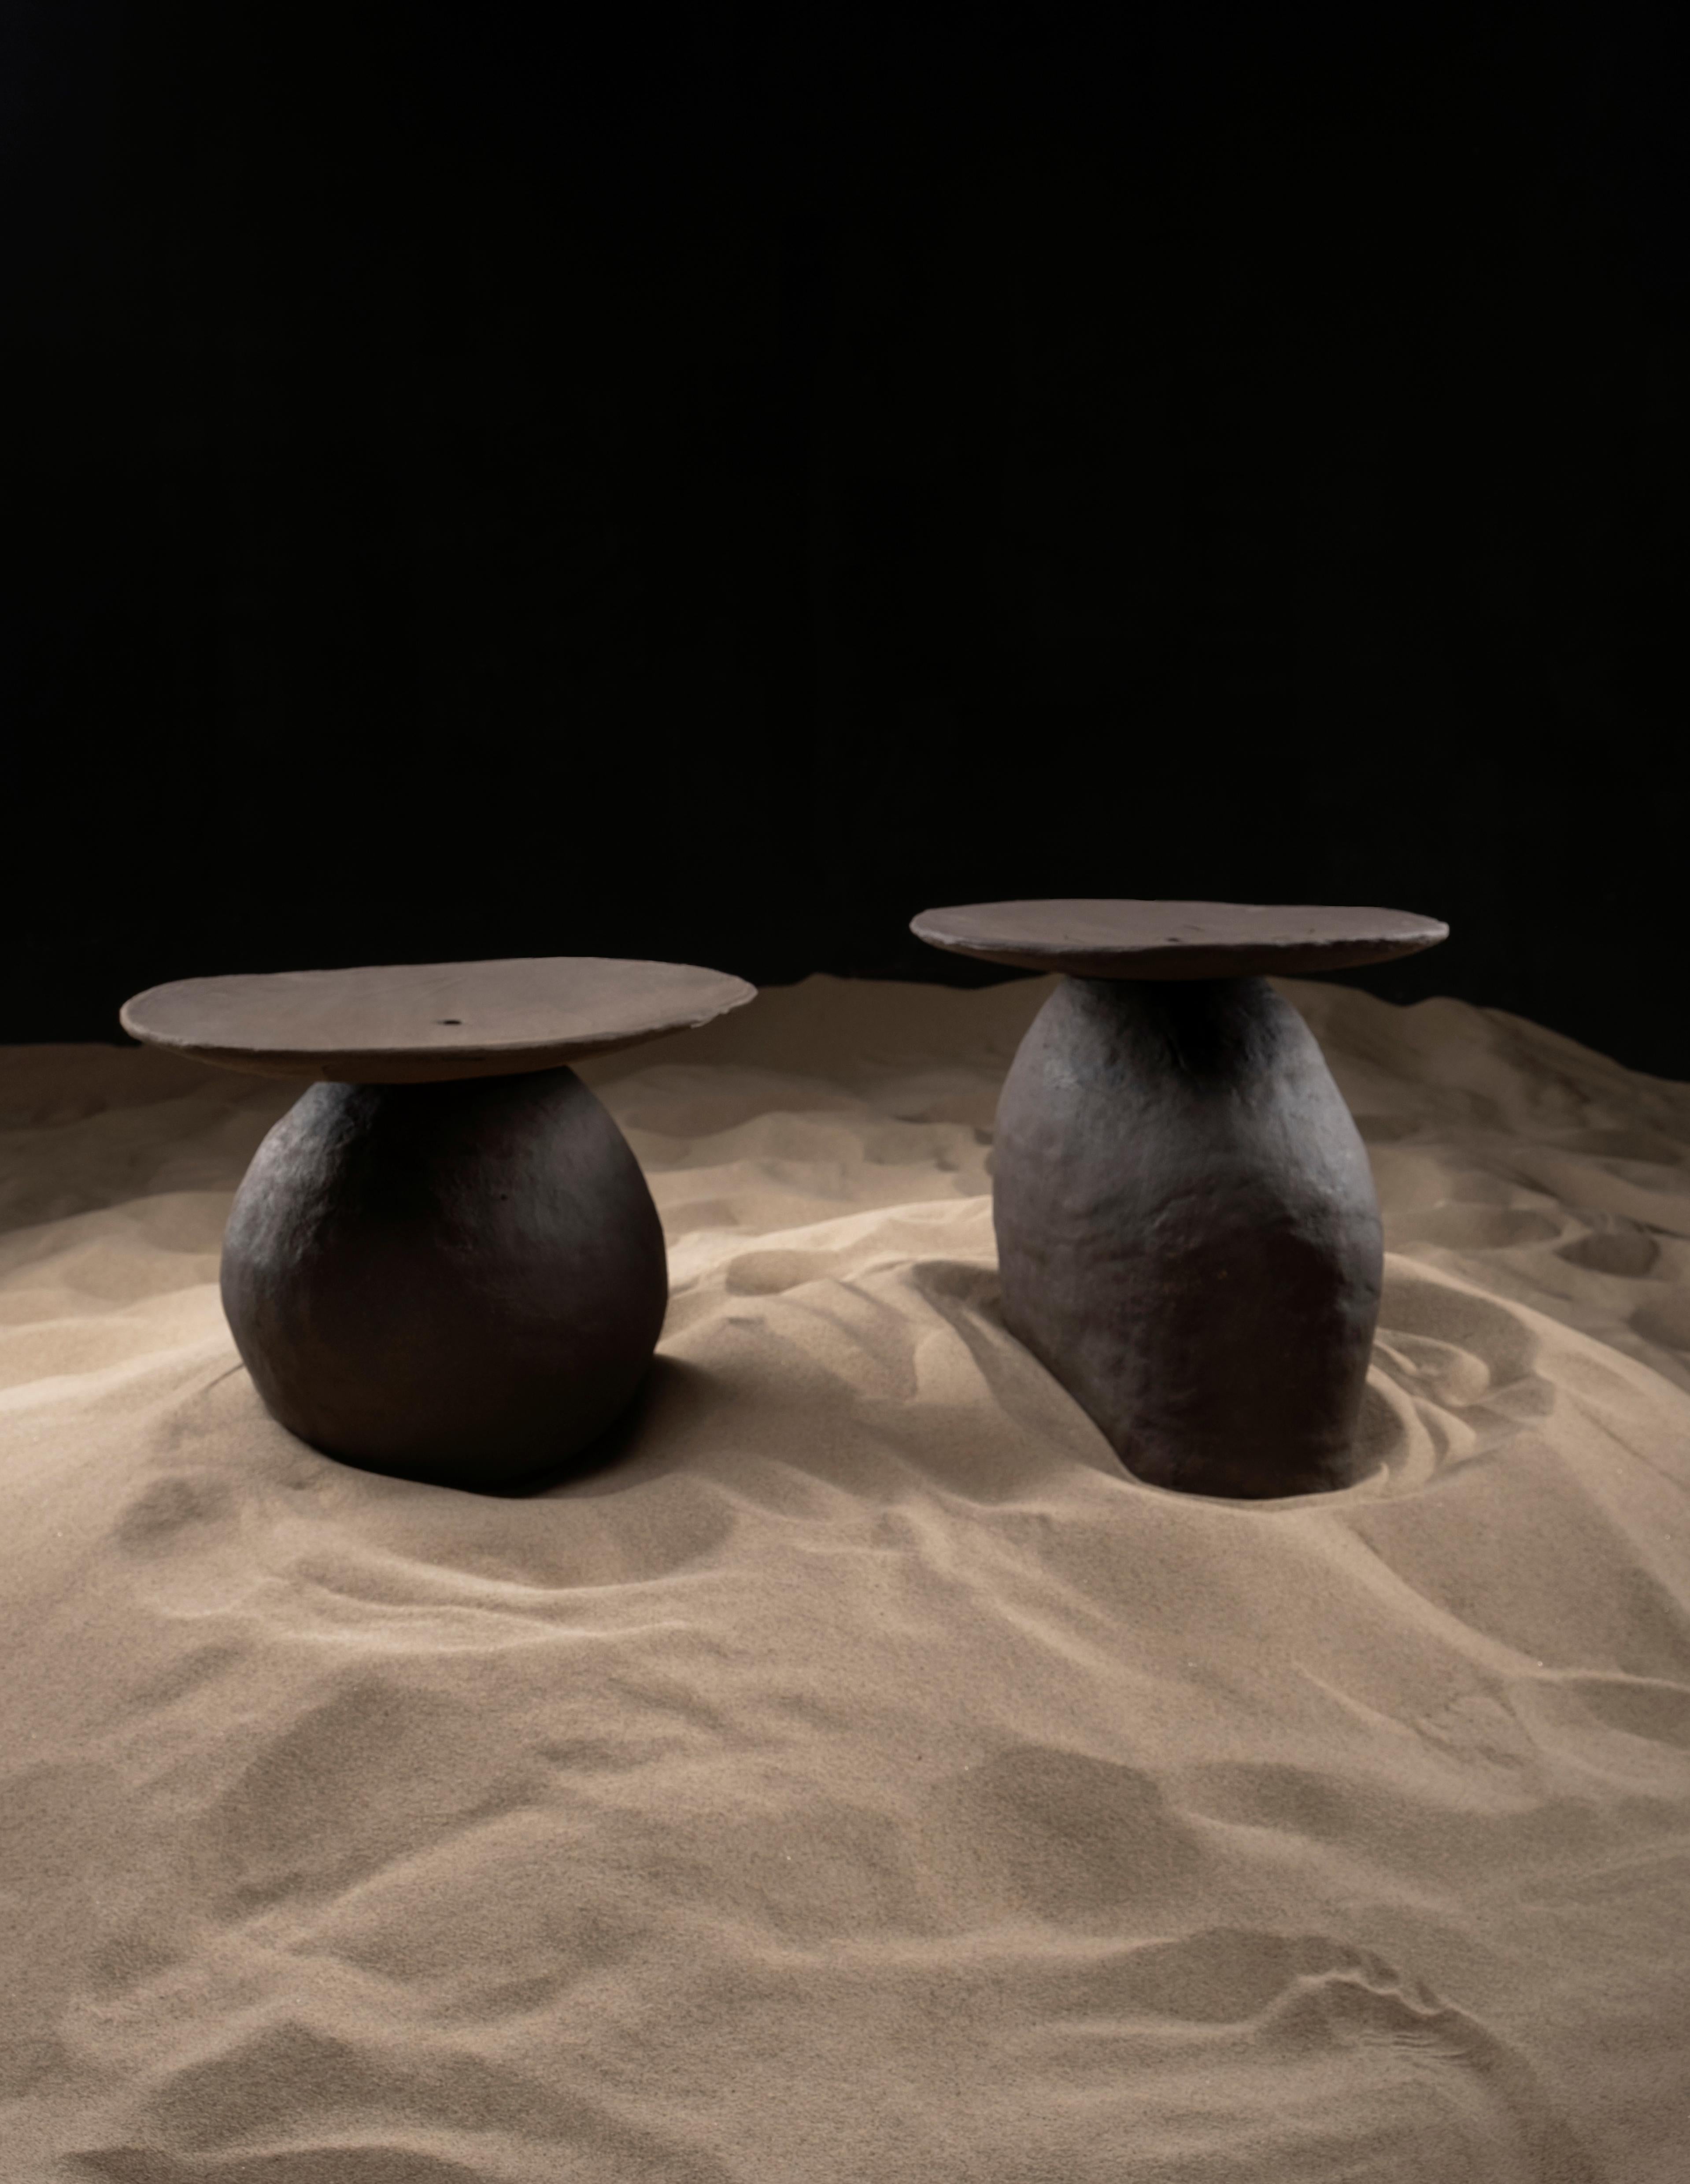 Der Senex Couchtisch besteht aus zwei skulpturalen Keramikmöbeln. Senex wurde durch die Erforschung alter Formen geschaffen, die der Homo Habilis während der menschlichen Evolution geformt hat. Durch die charakteristische Interpretation des